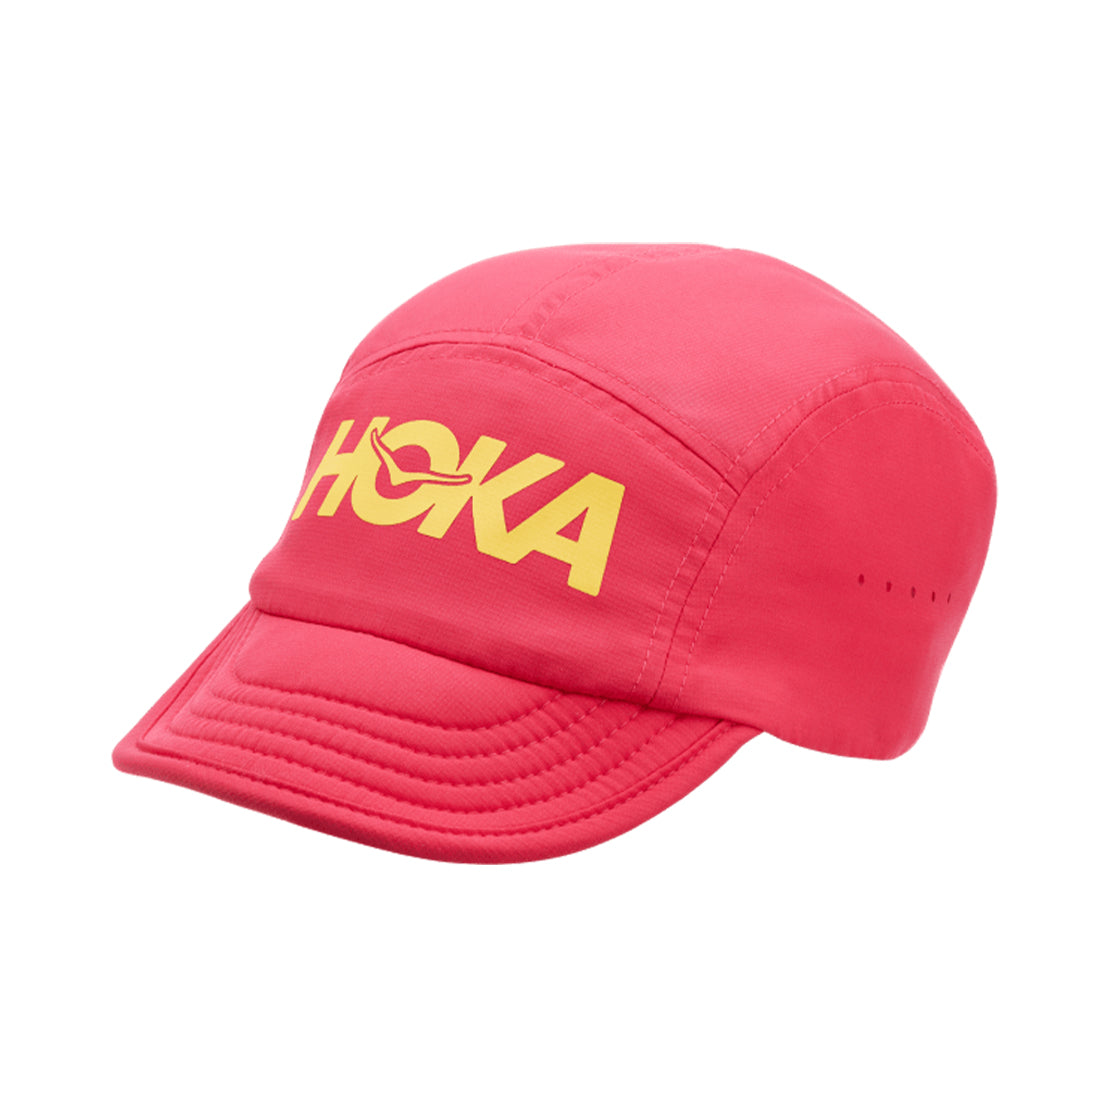 Hoka One One Packable Trail Hat Raspberry 1120458-RASP –